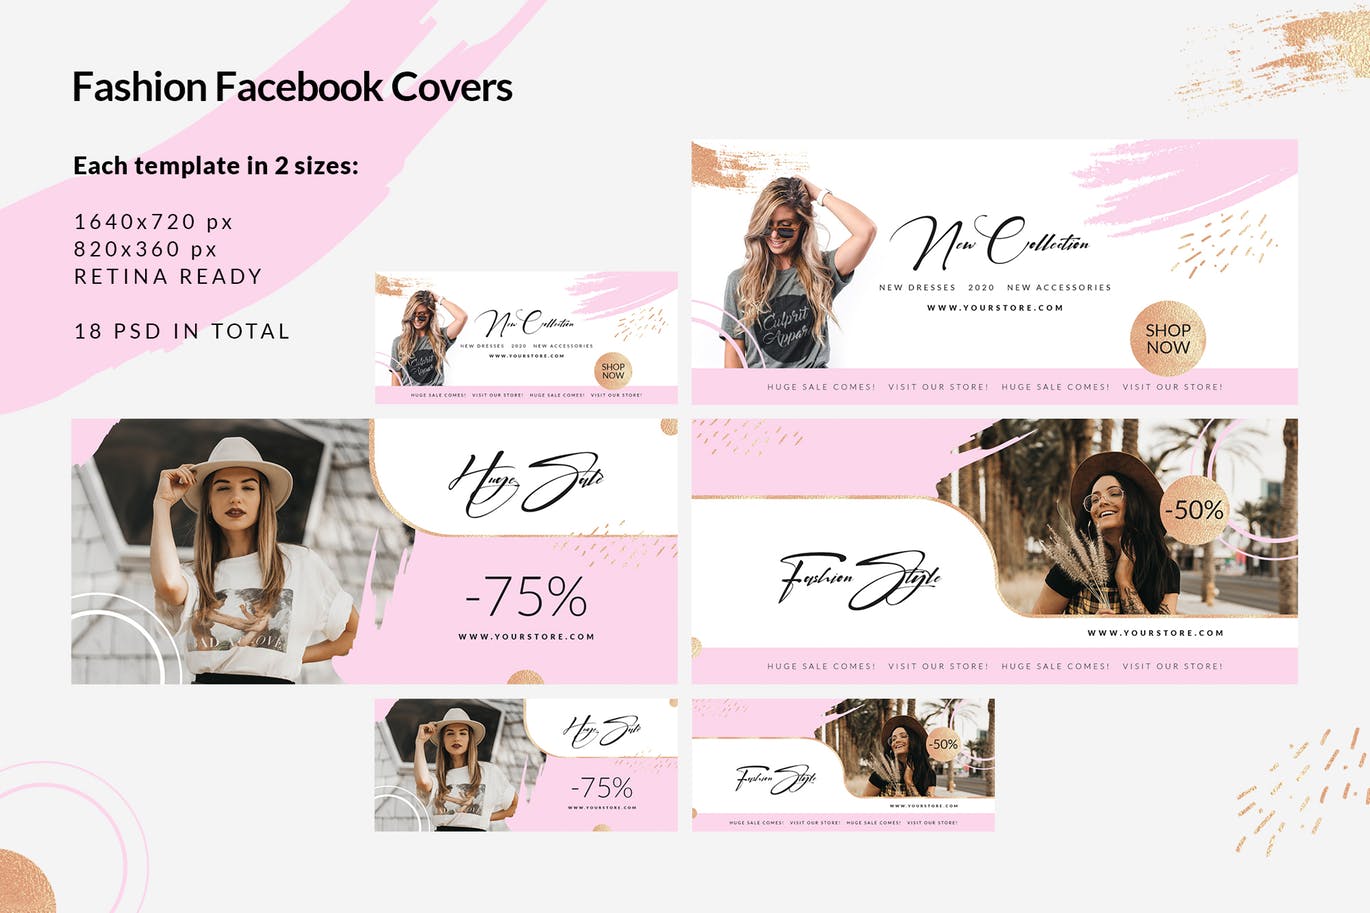 时尚品牌打折促销Facebook封面设计模板素材库精选 Fashion Facebook Covers插图(2)